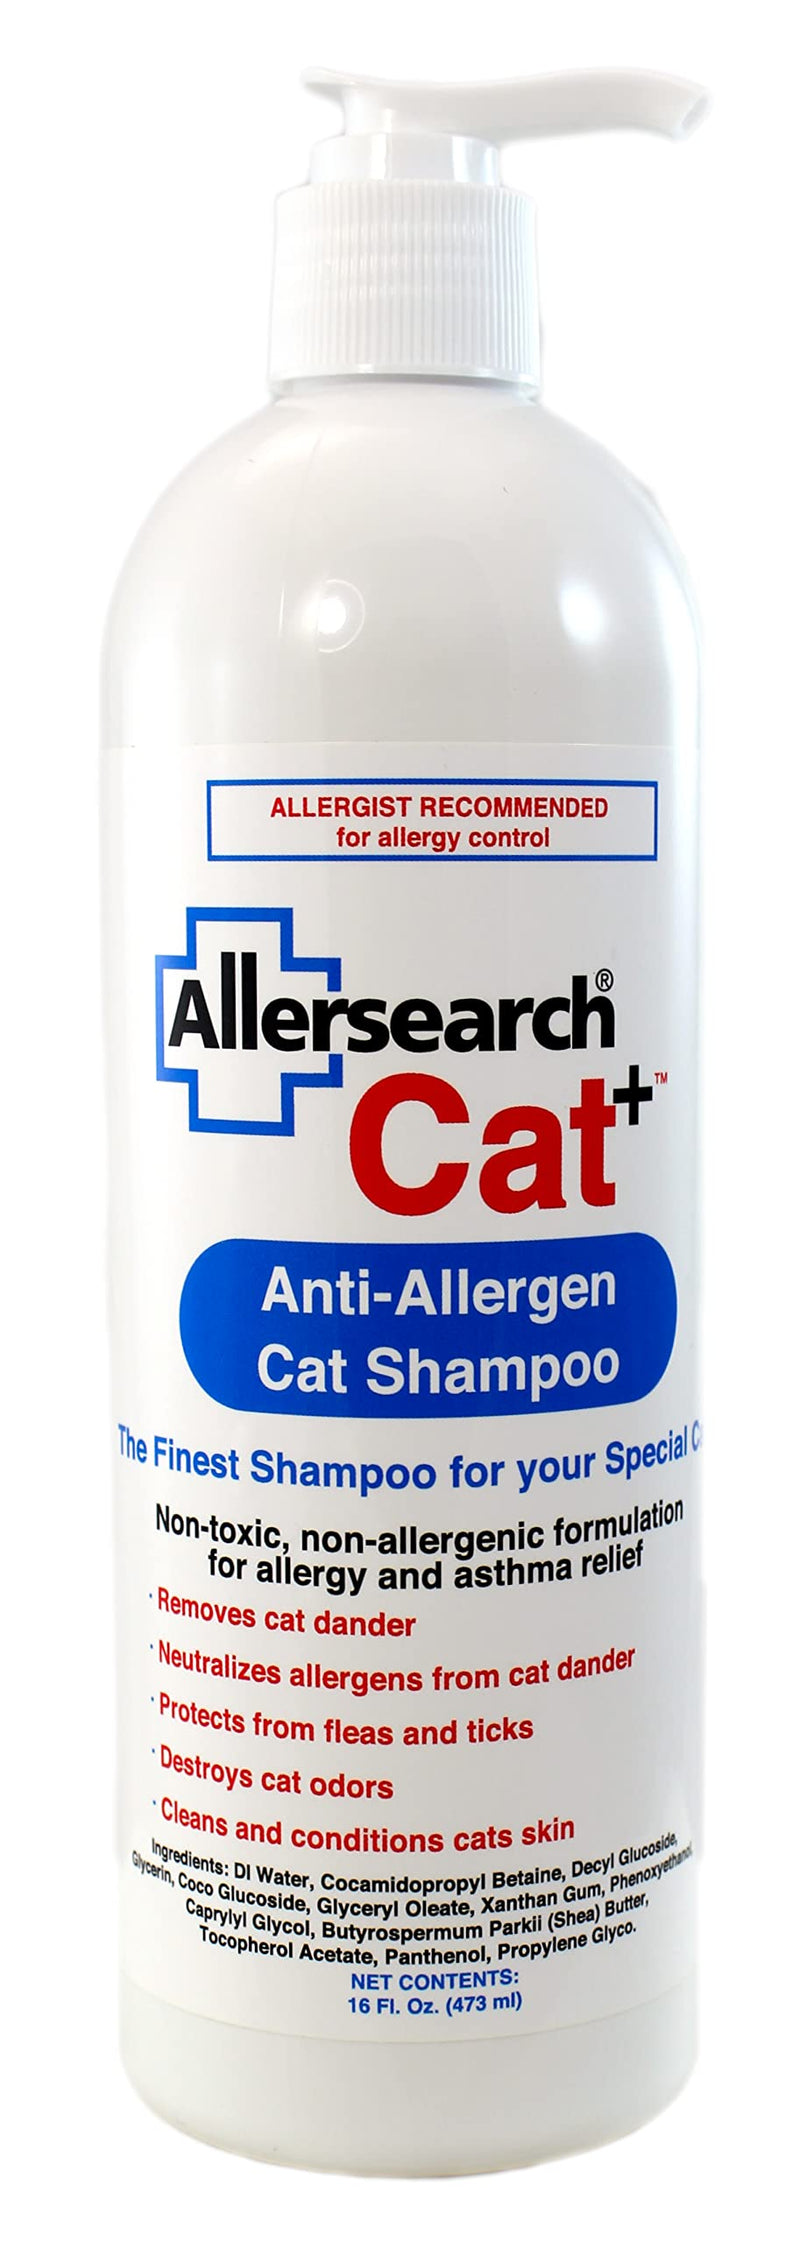 Allersearch Cat+ Anti-Allergen Cat Shampoo - PawsPlanet Australia